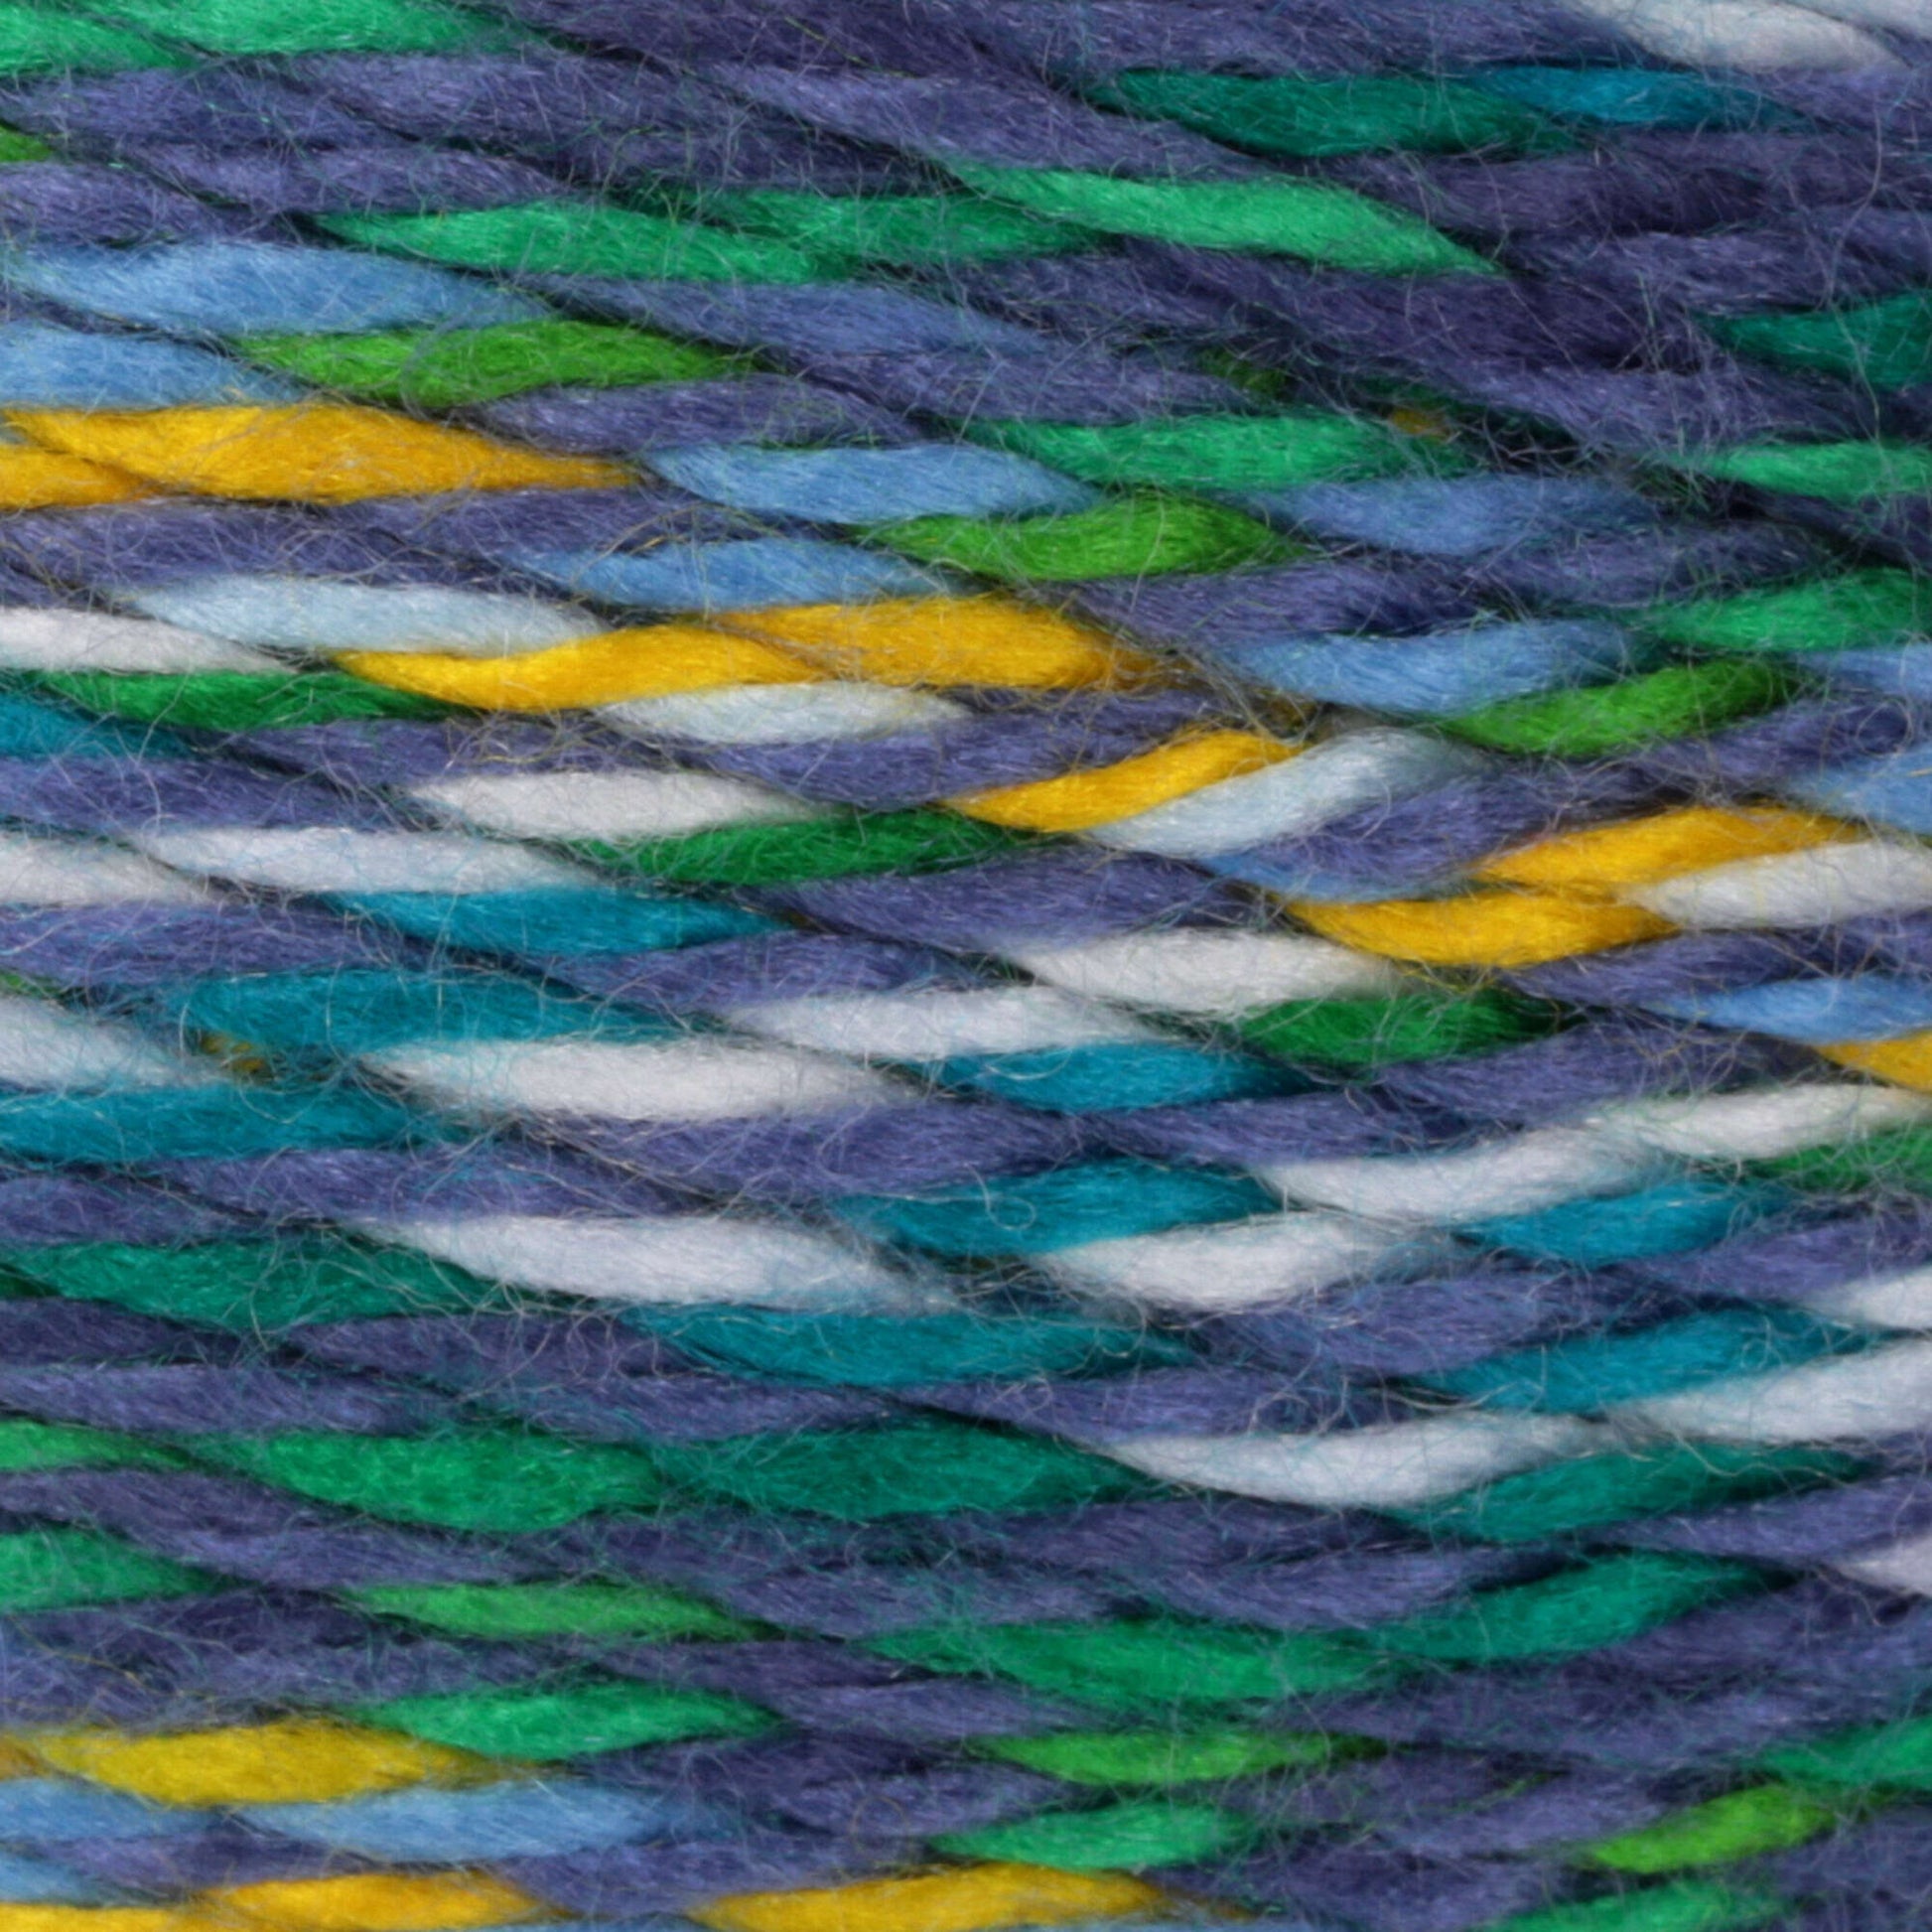 Bernat Softee Baby Colors Yarn - Discontinued Shades